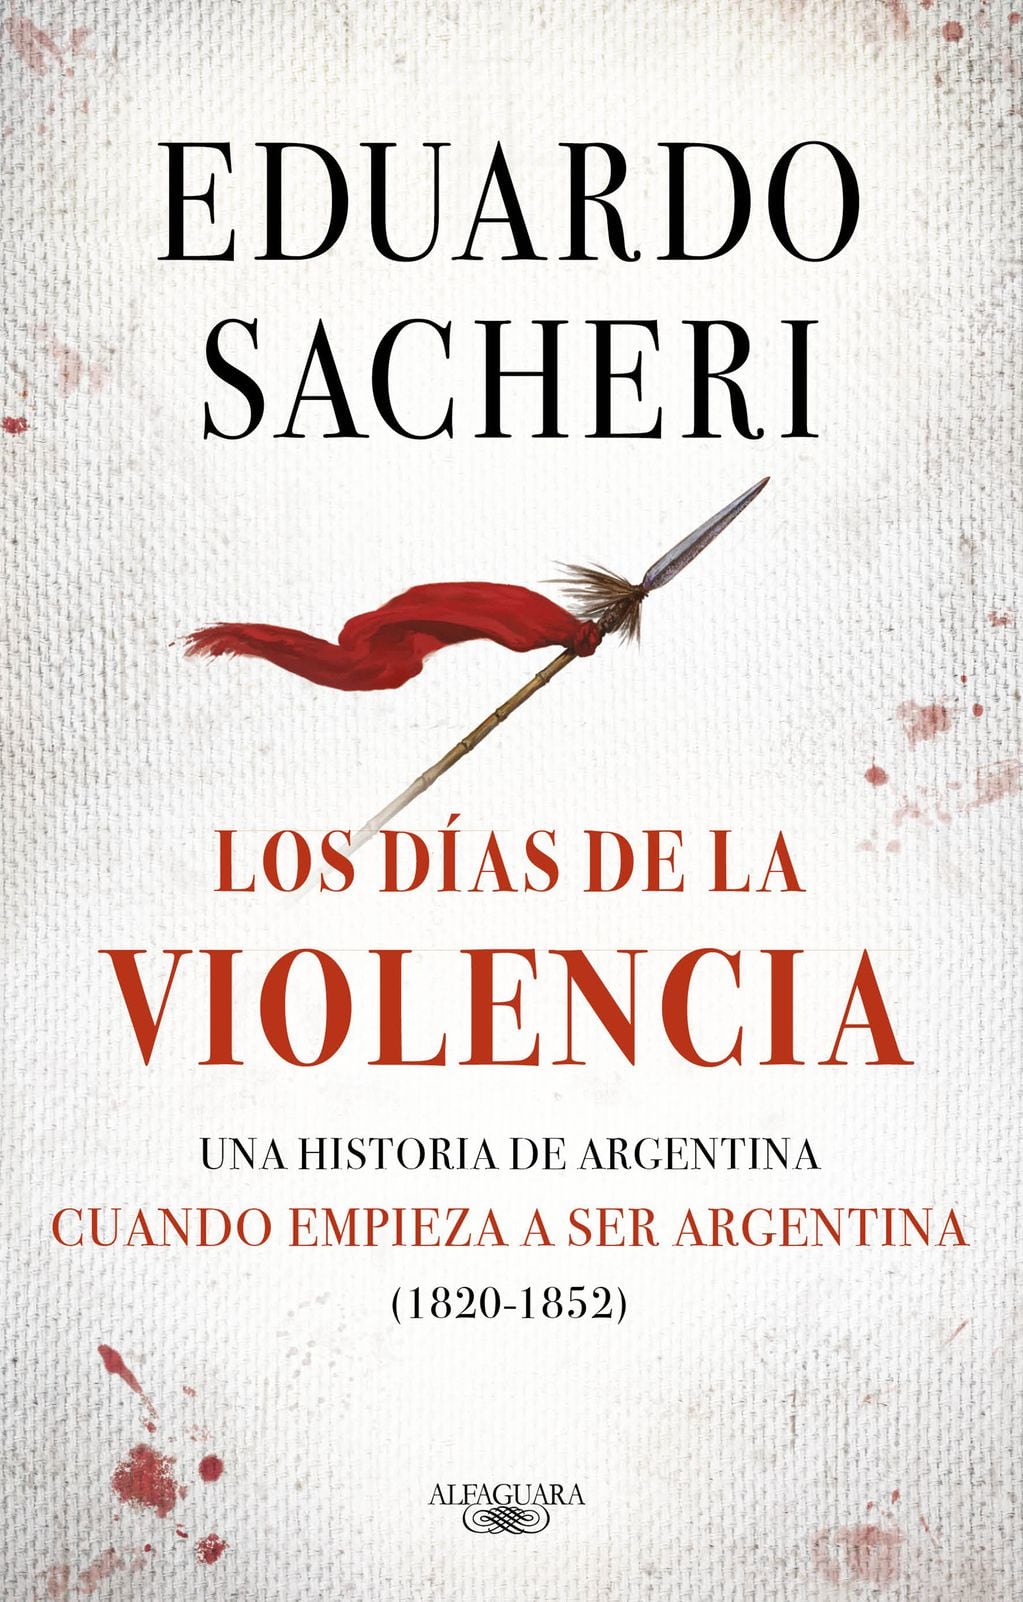 Un libro de historia escrito por Eduardo Sacheri.